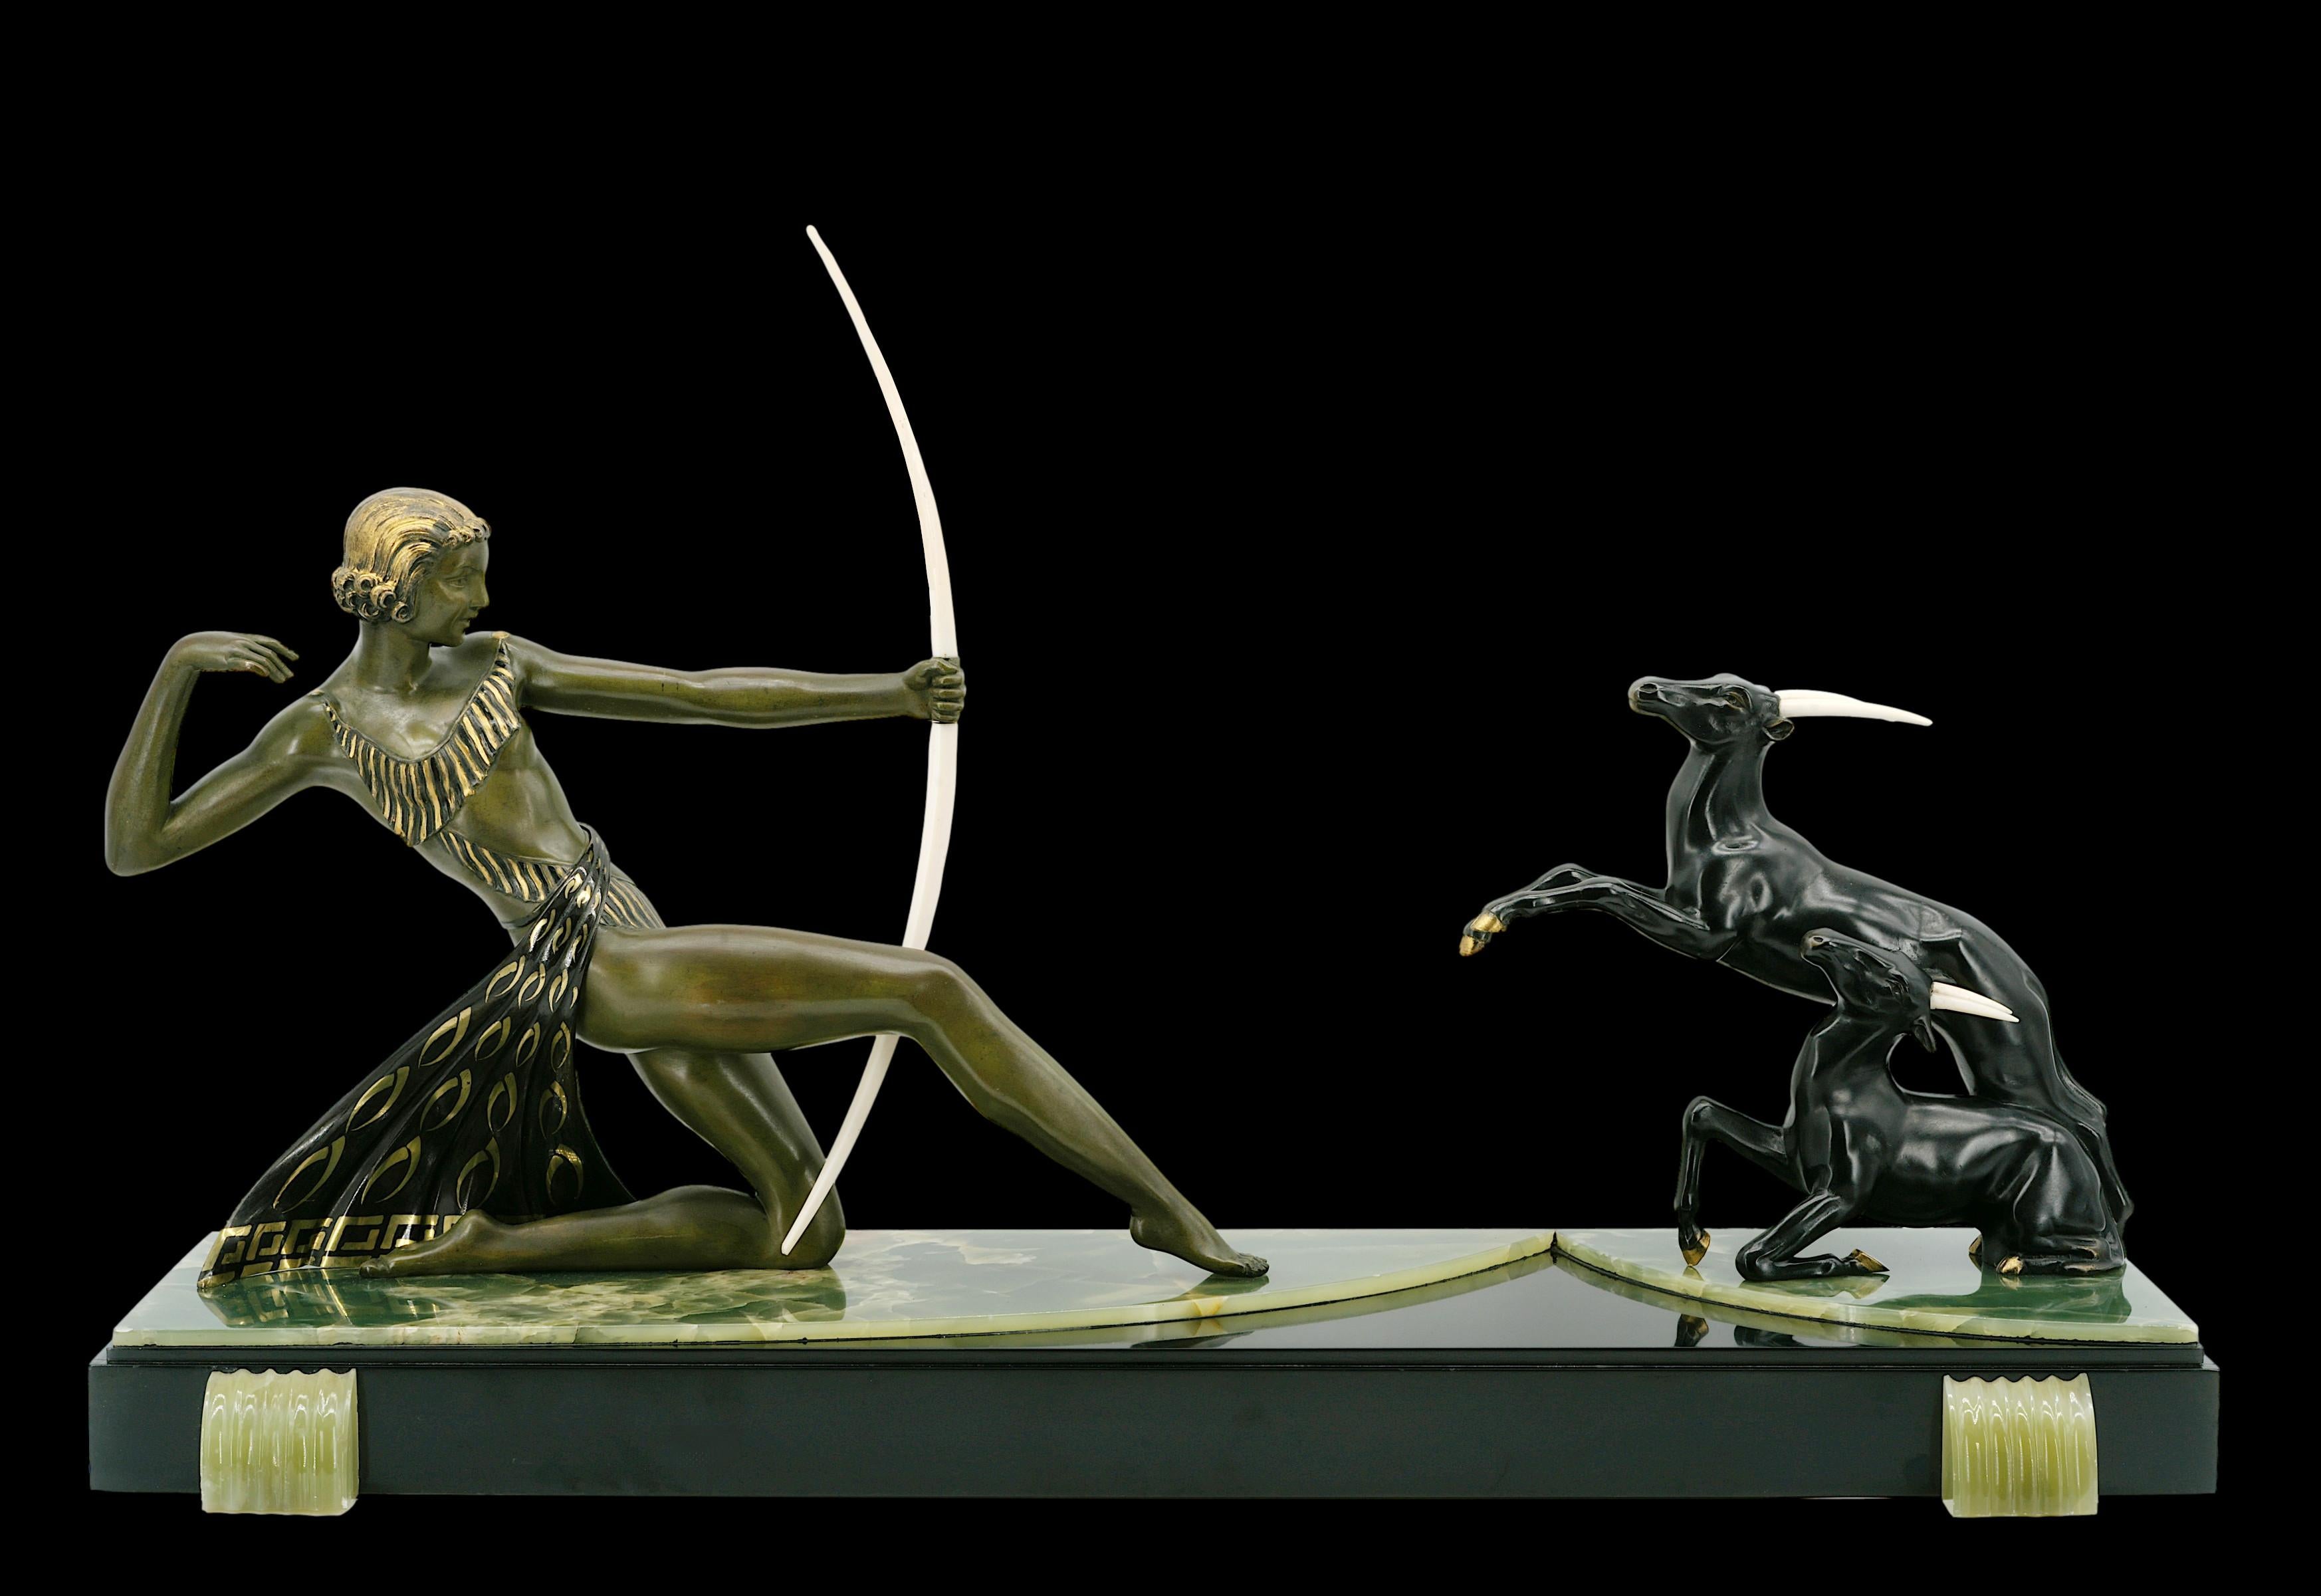 Französische Art-Déco-Skulptur, um 1930 Antilopenjägerin. Diese Art von Kunstwerken, die von den französischen Kolonien inspiriert sind, hatten damals einen großen Erfolg, der in der Internationalen Kolonialausstellung in Paris 1931 gipfelte. Zinn,